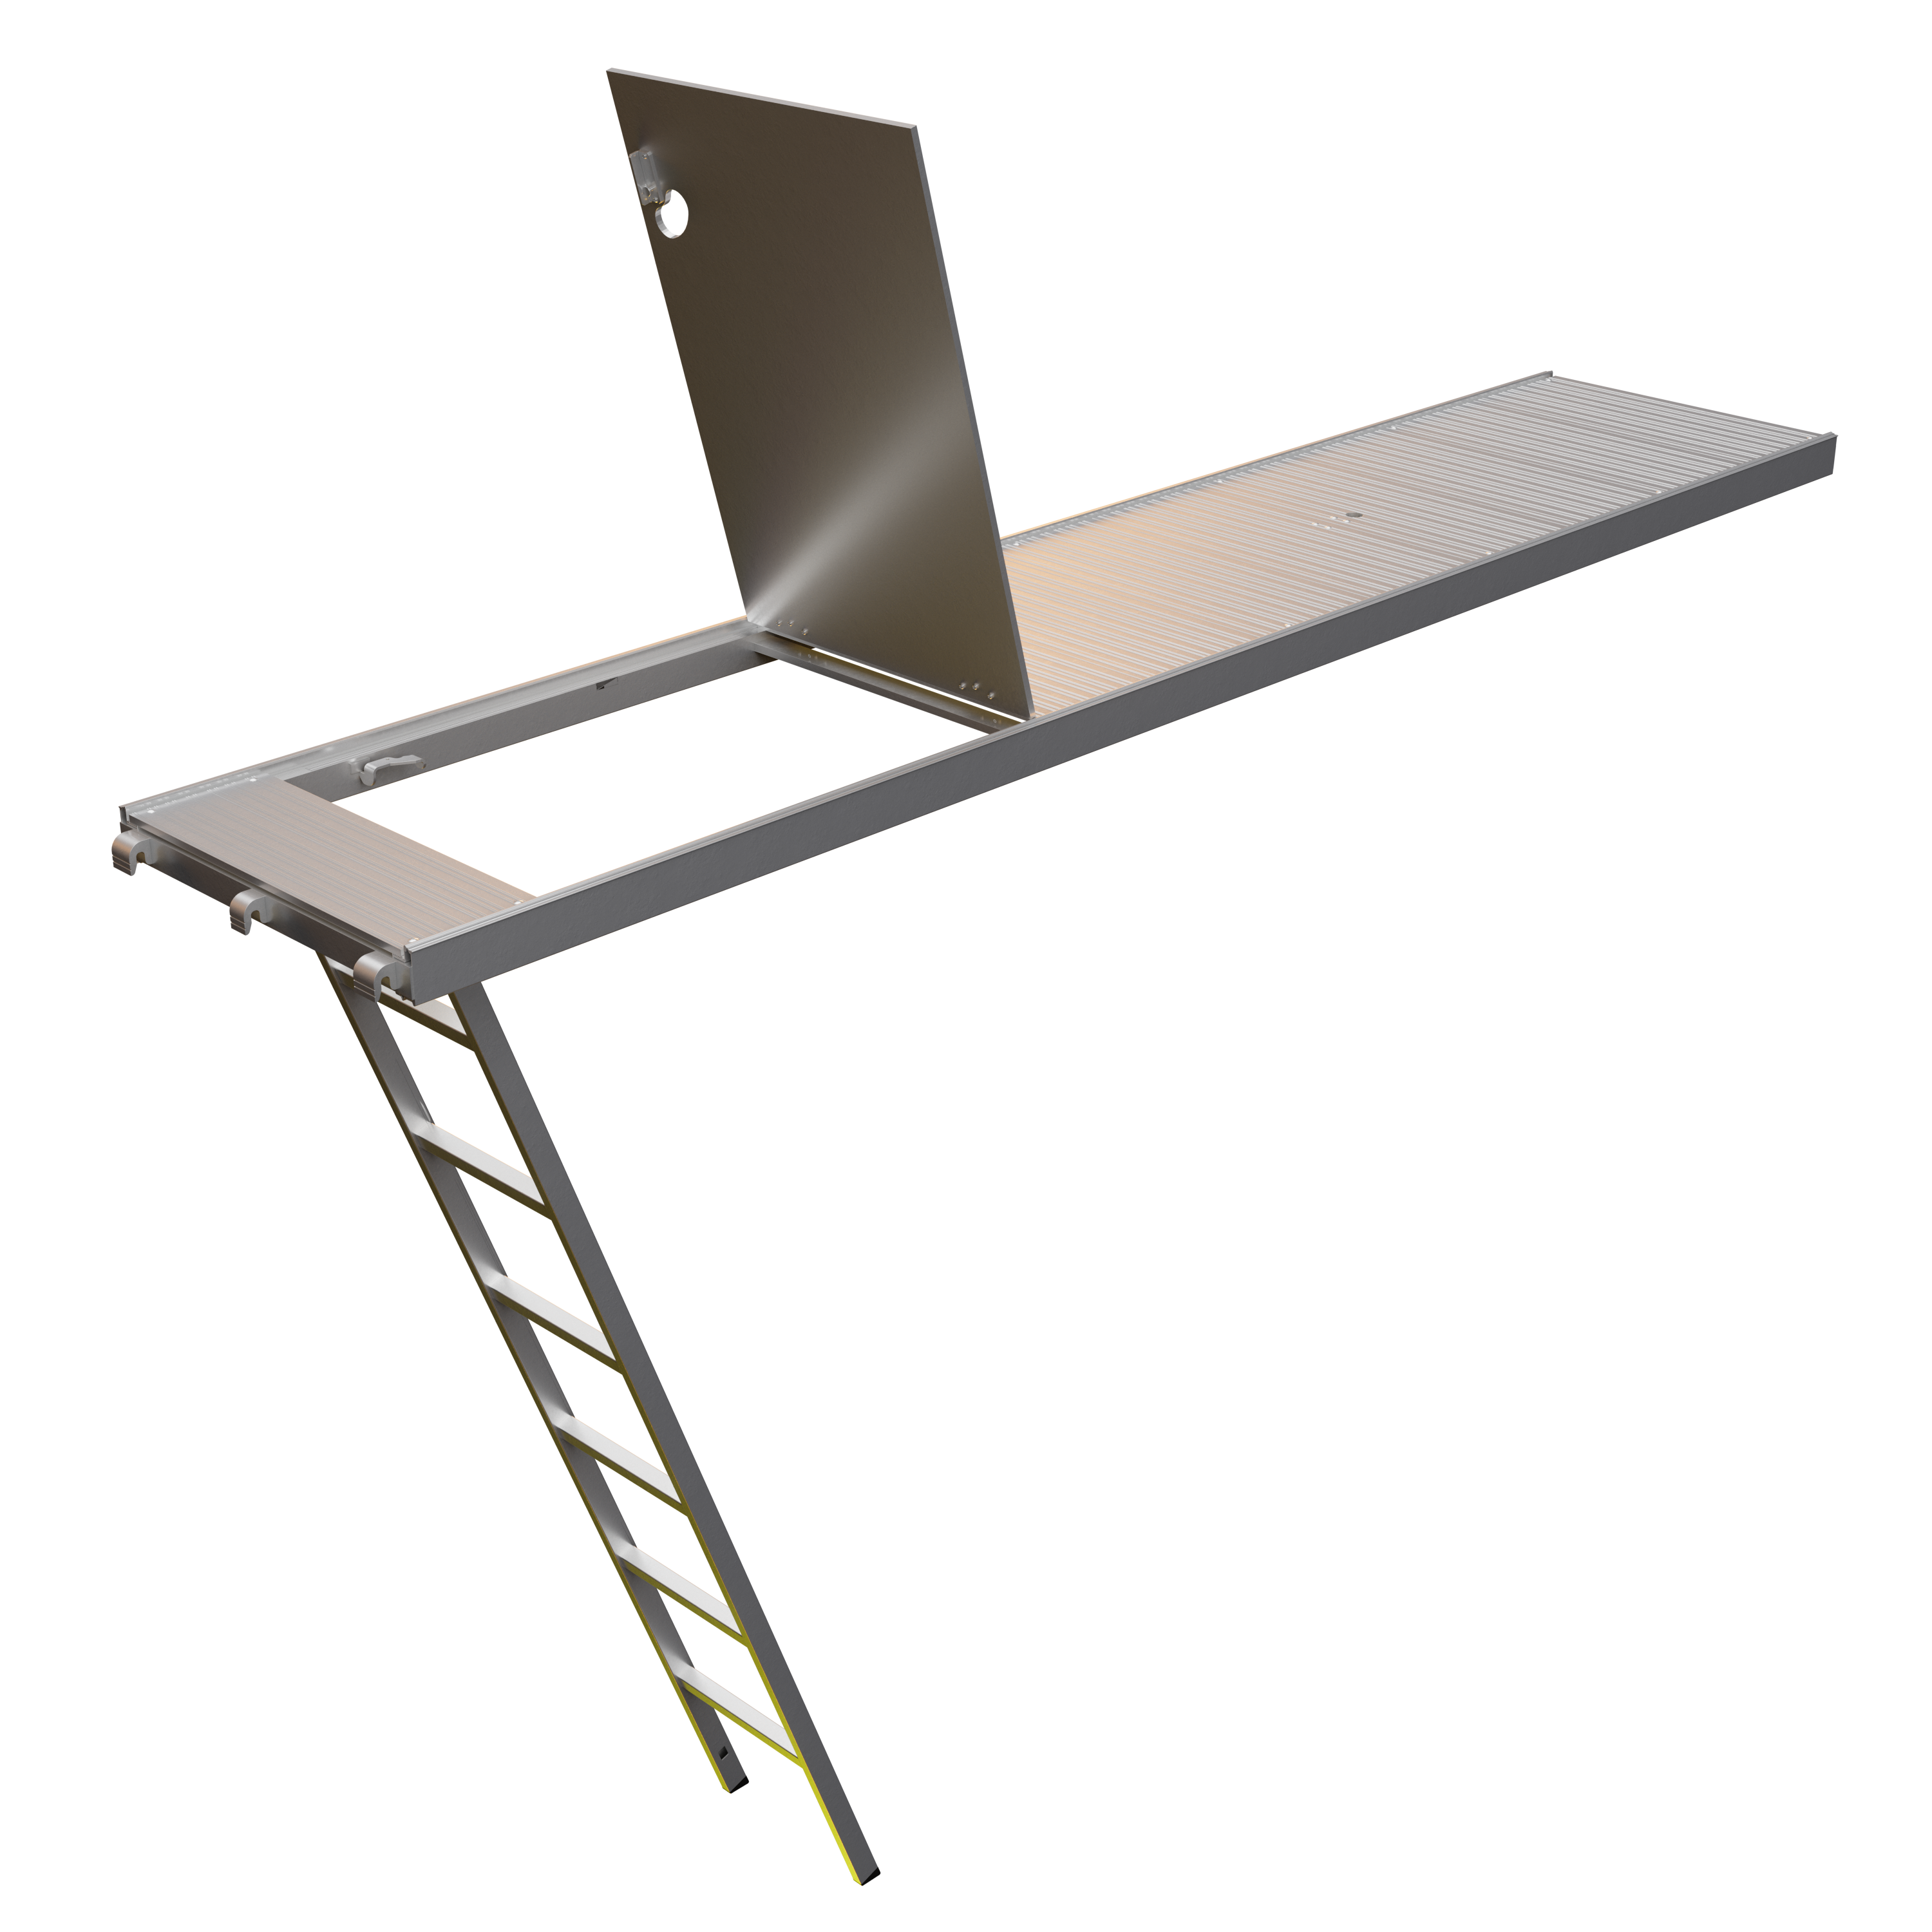 Plancher trappe aluminium avec échelle incorporée